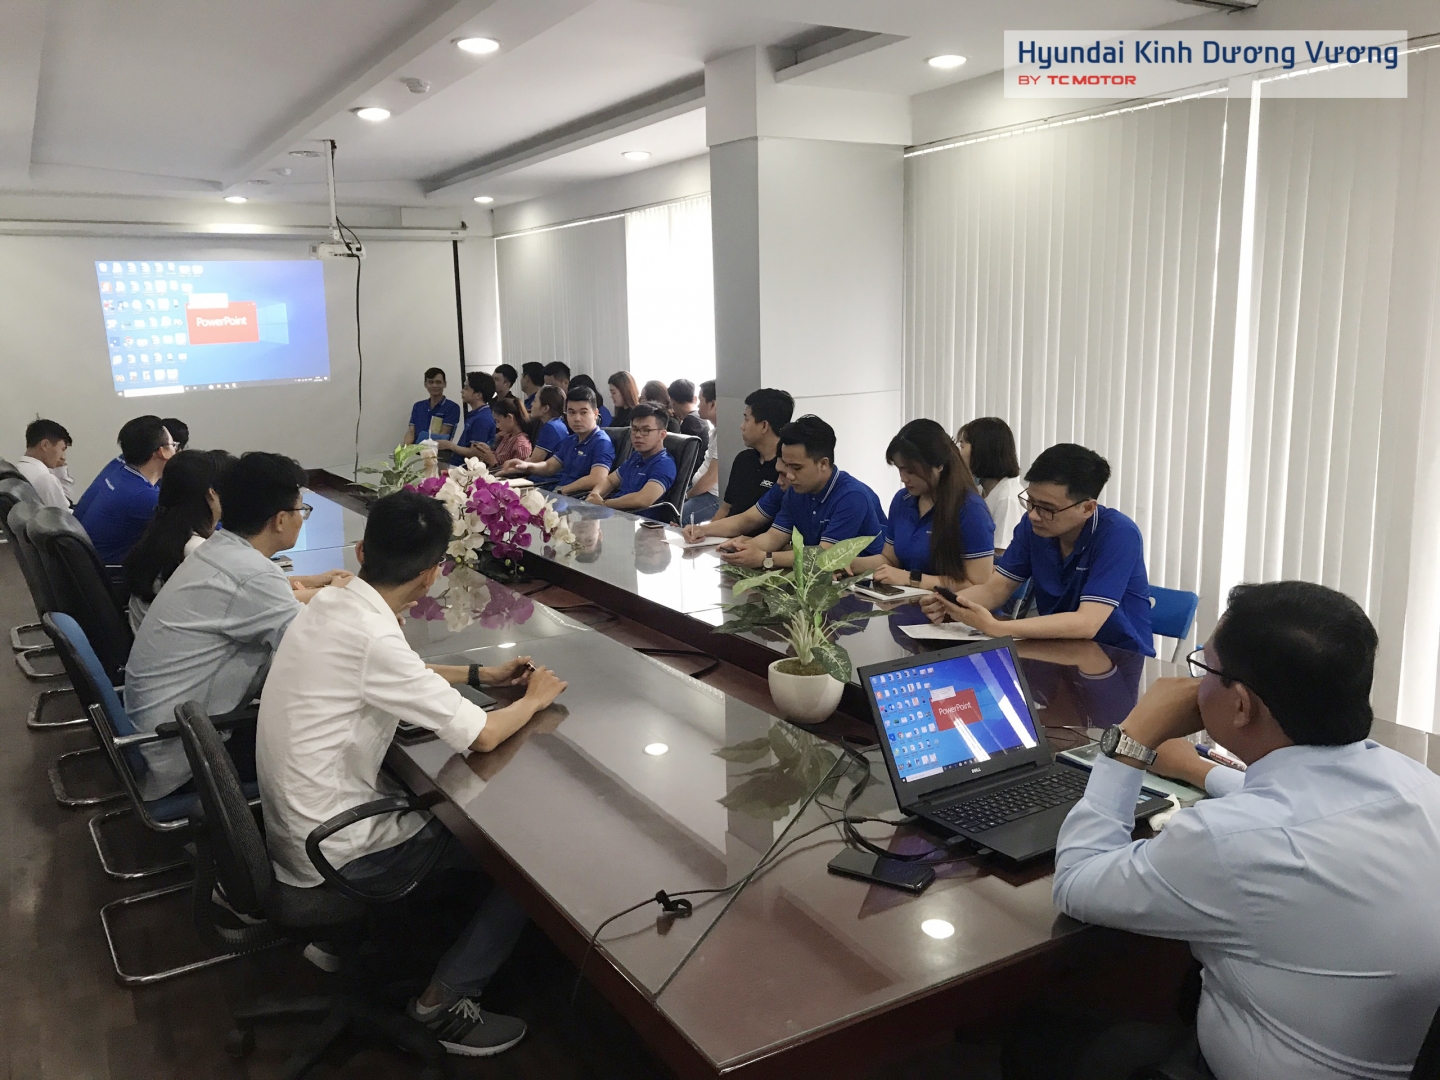 Hoạt động đào tạo của Phòng Kinh Doanh tại Hyundai Kinh Dương Vương